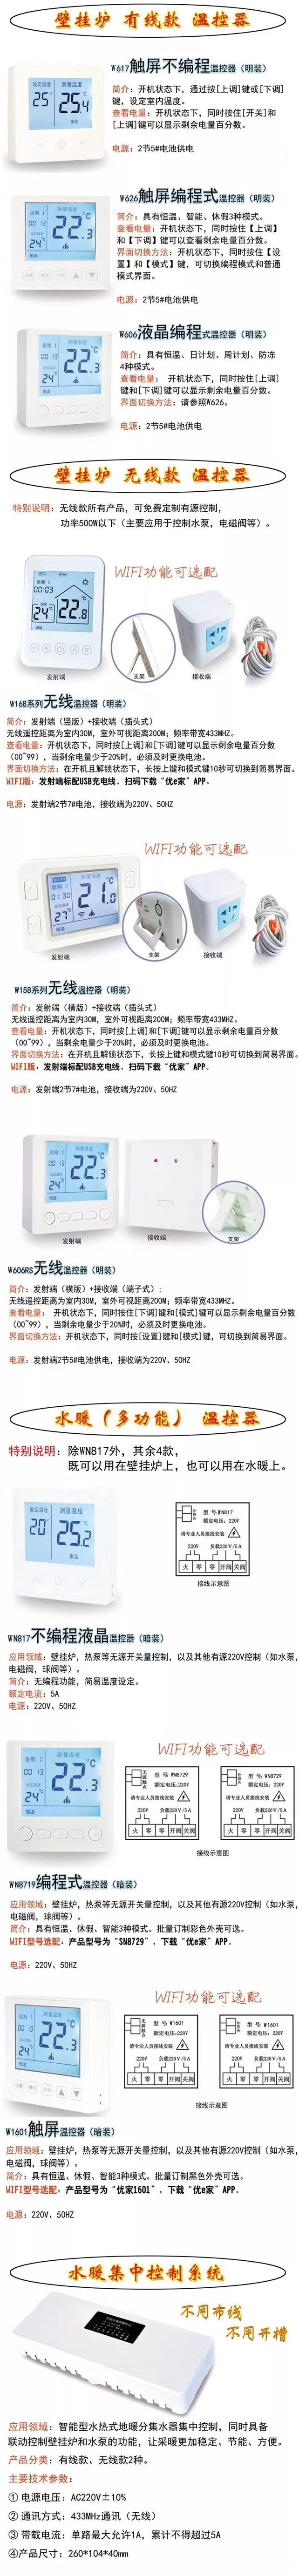 壁挂炉温控器 无线壁挂炉温控器 手机控制wifi壁挂炉温控器示例图8